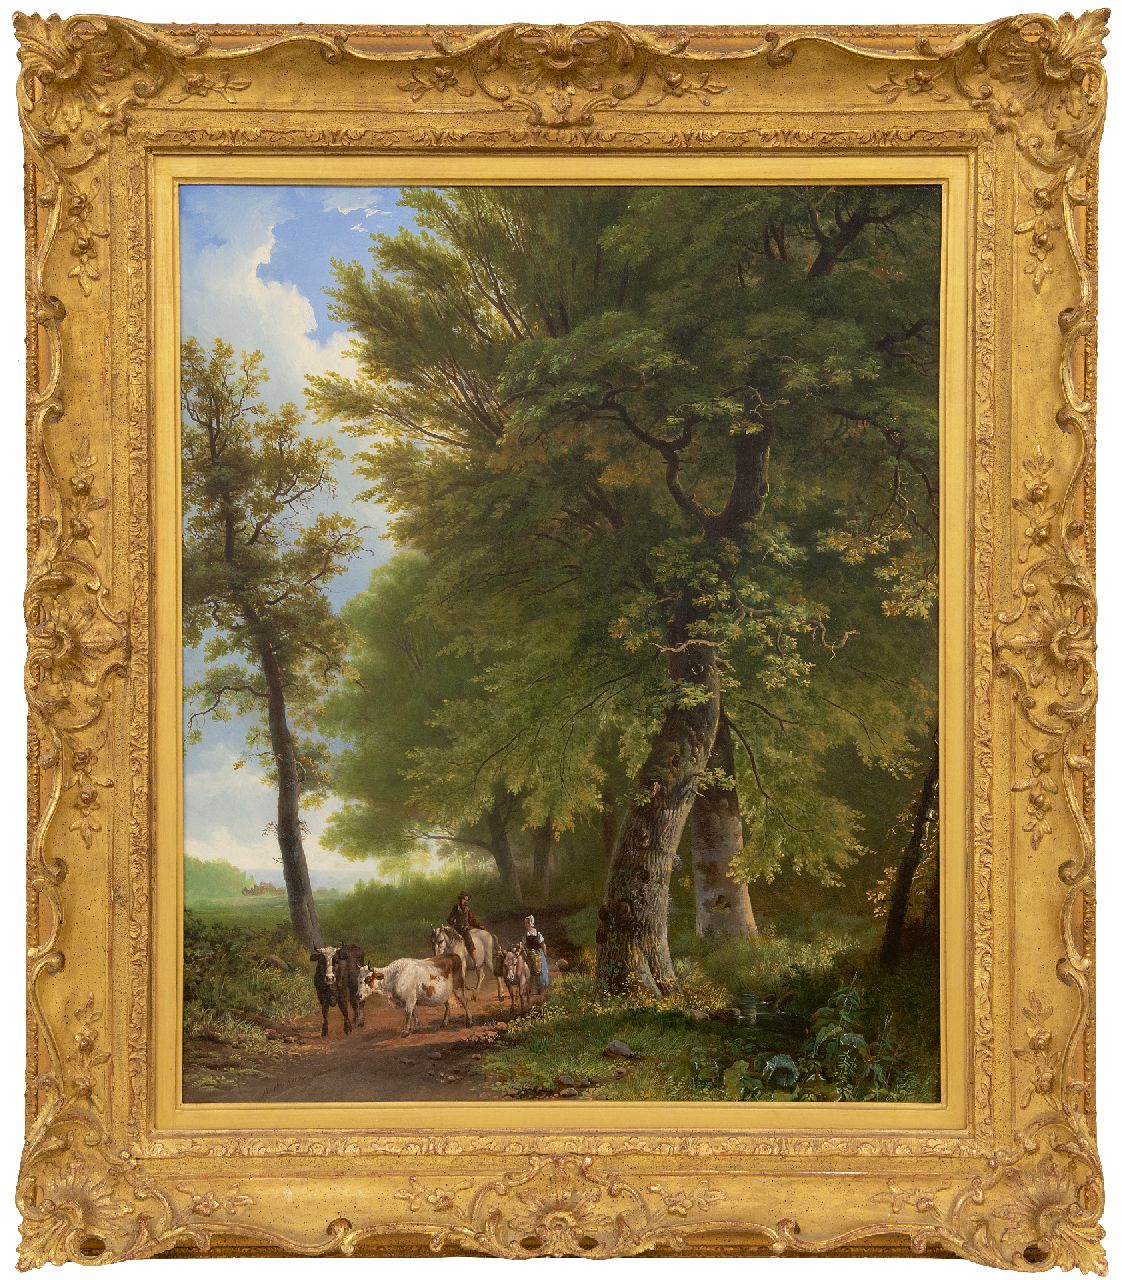 Bodeman W.  | Willem Bodeman | Schilderijen te koop aangeboden | Een boerin met vee en een reiziger op een bospad, olieverf op paneel 58,8 x 49,0 cm, gesigneerd linksonder